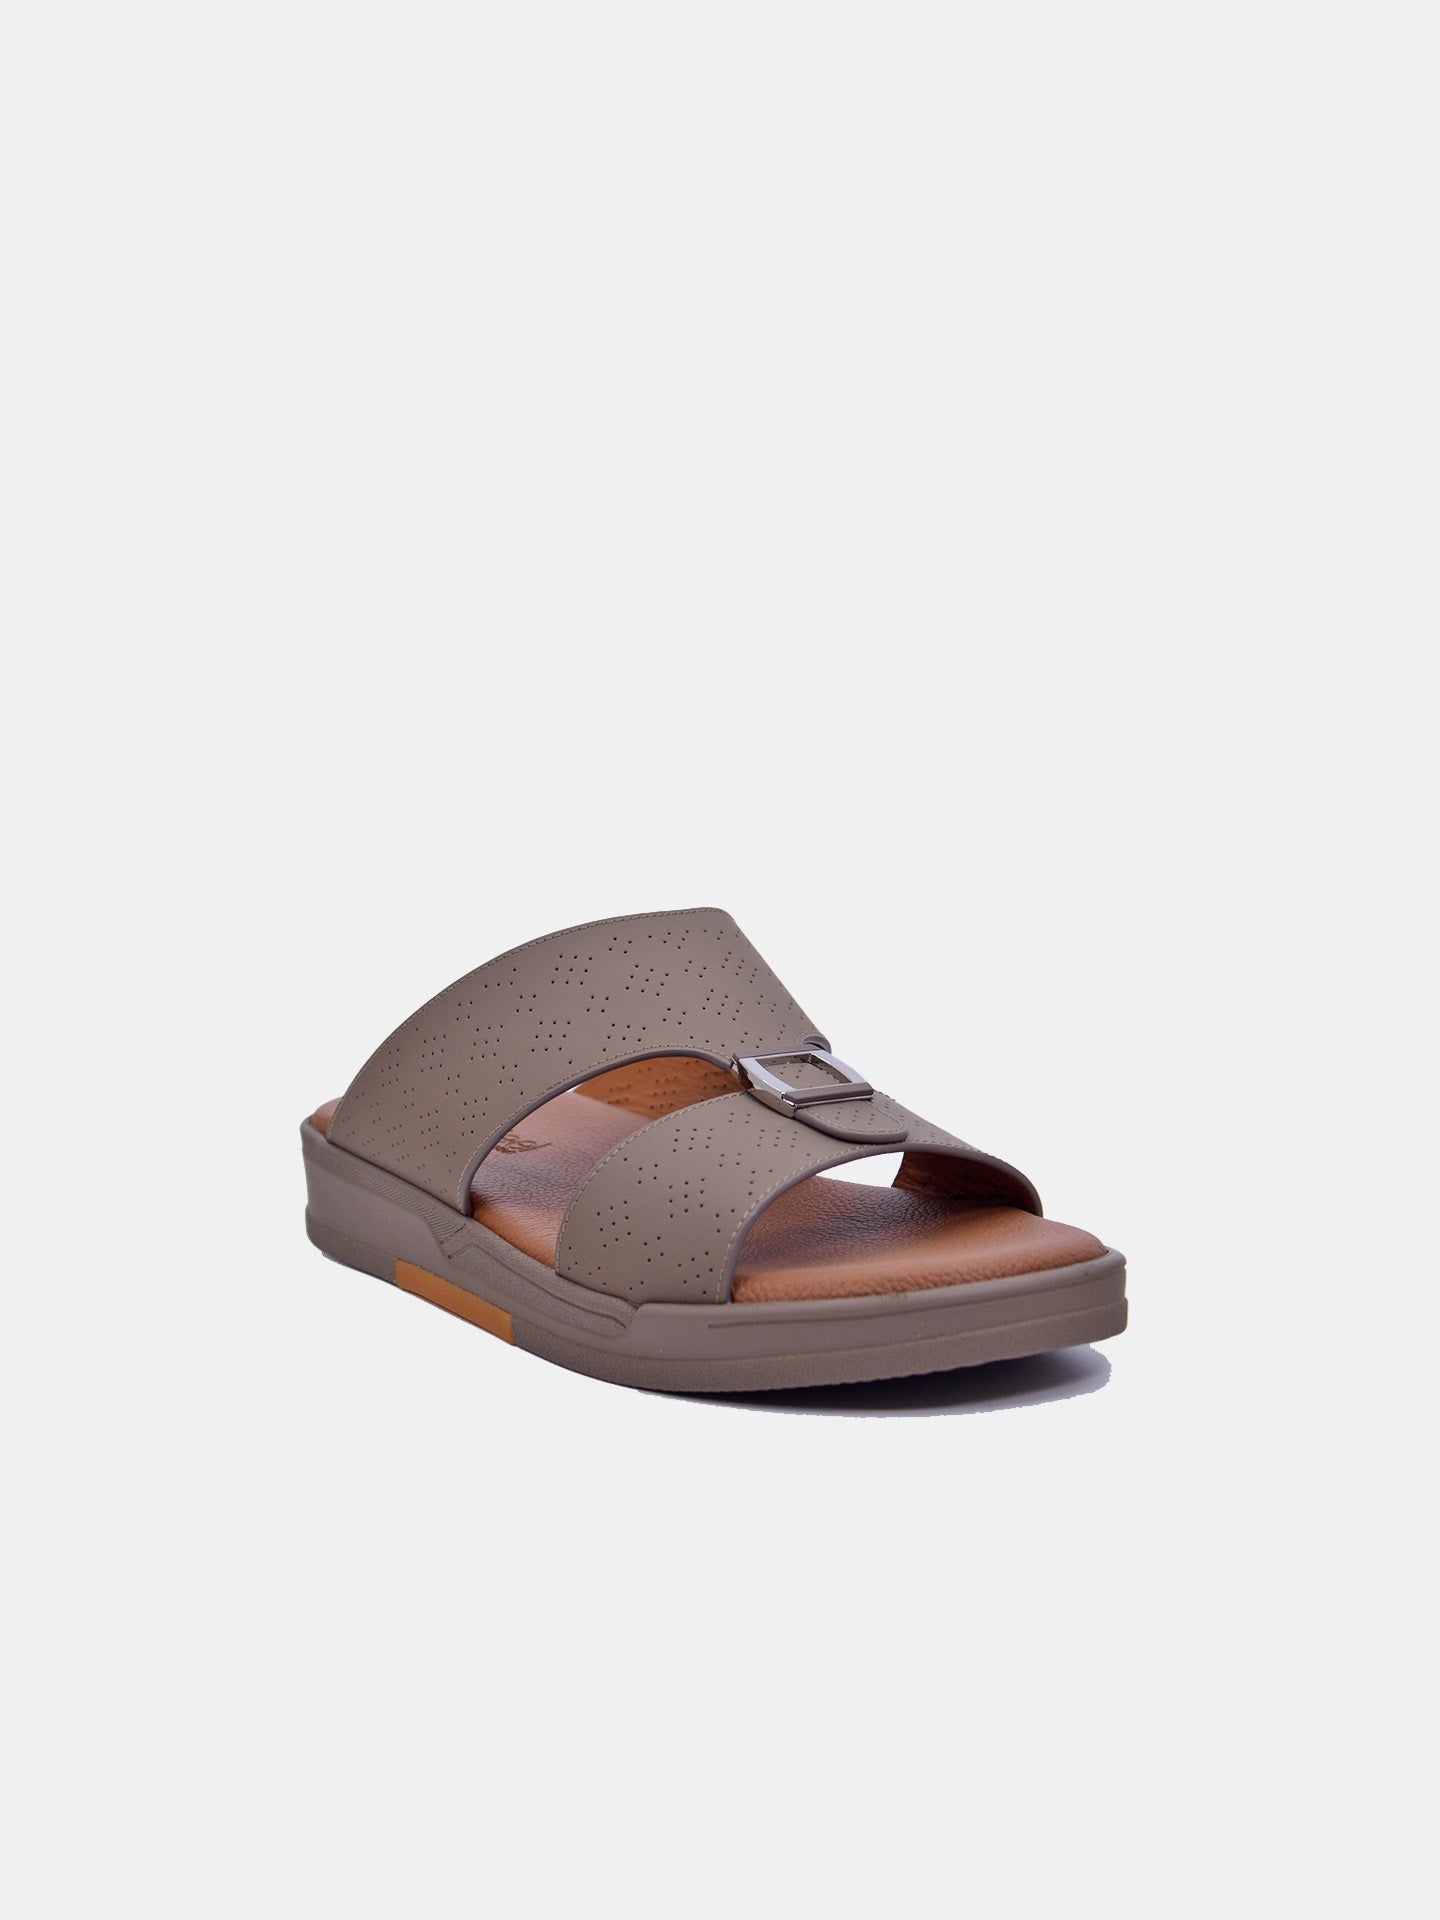 Barjeel Uno MSA-119 Boys Arabic Sandals #color_Brown